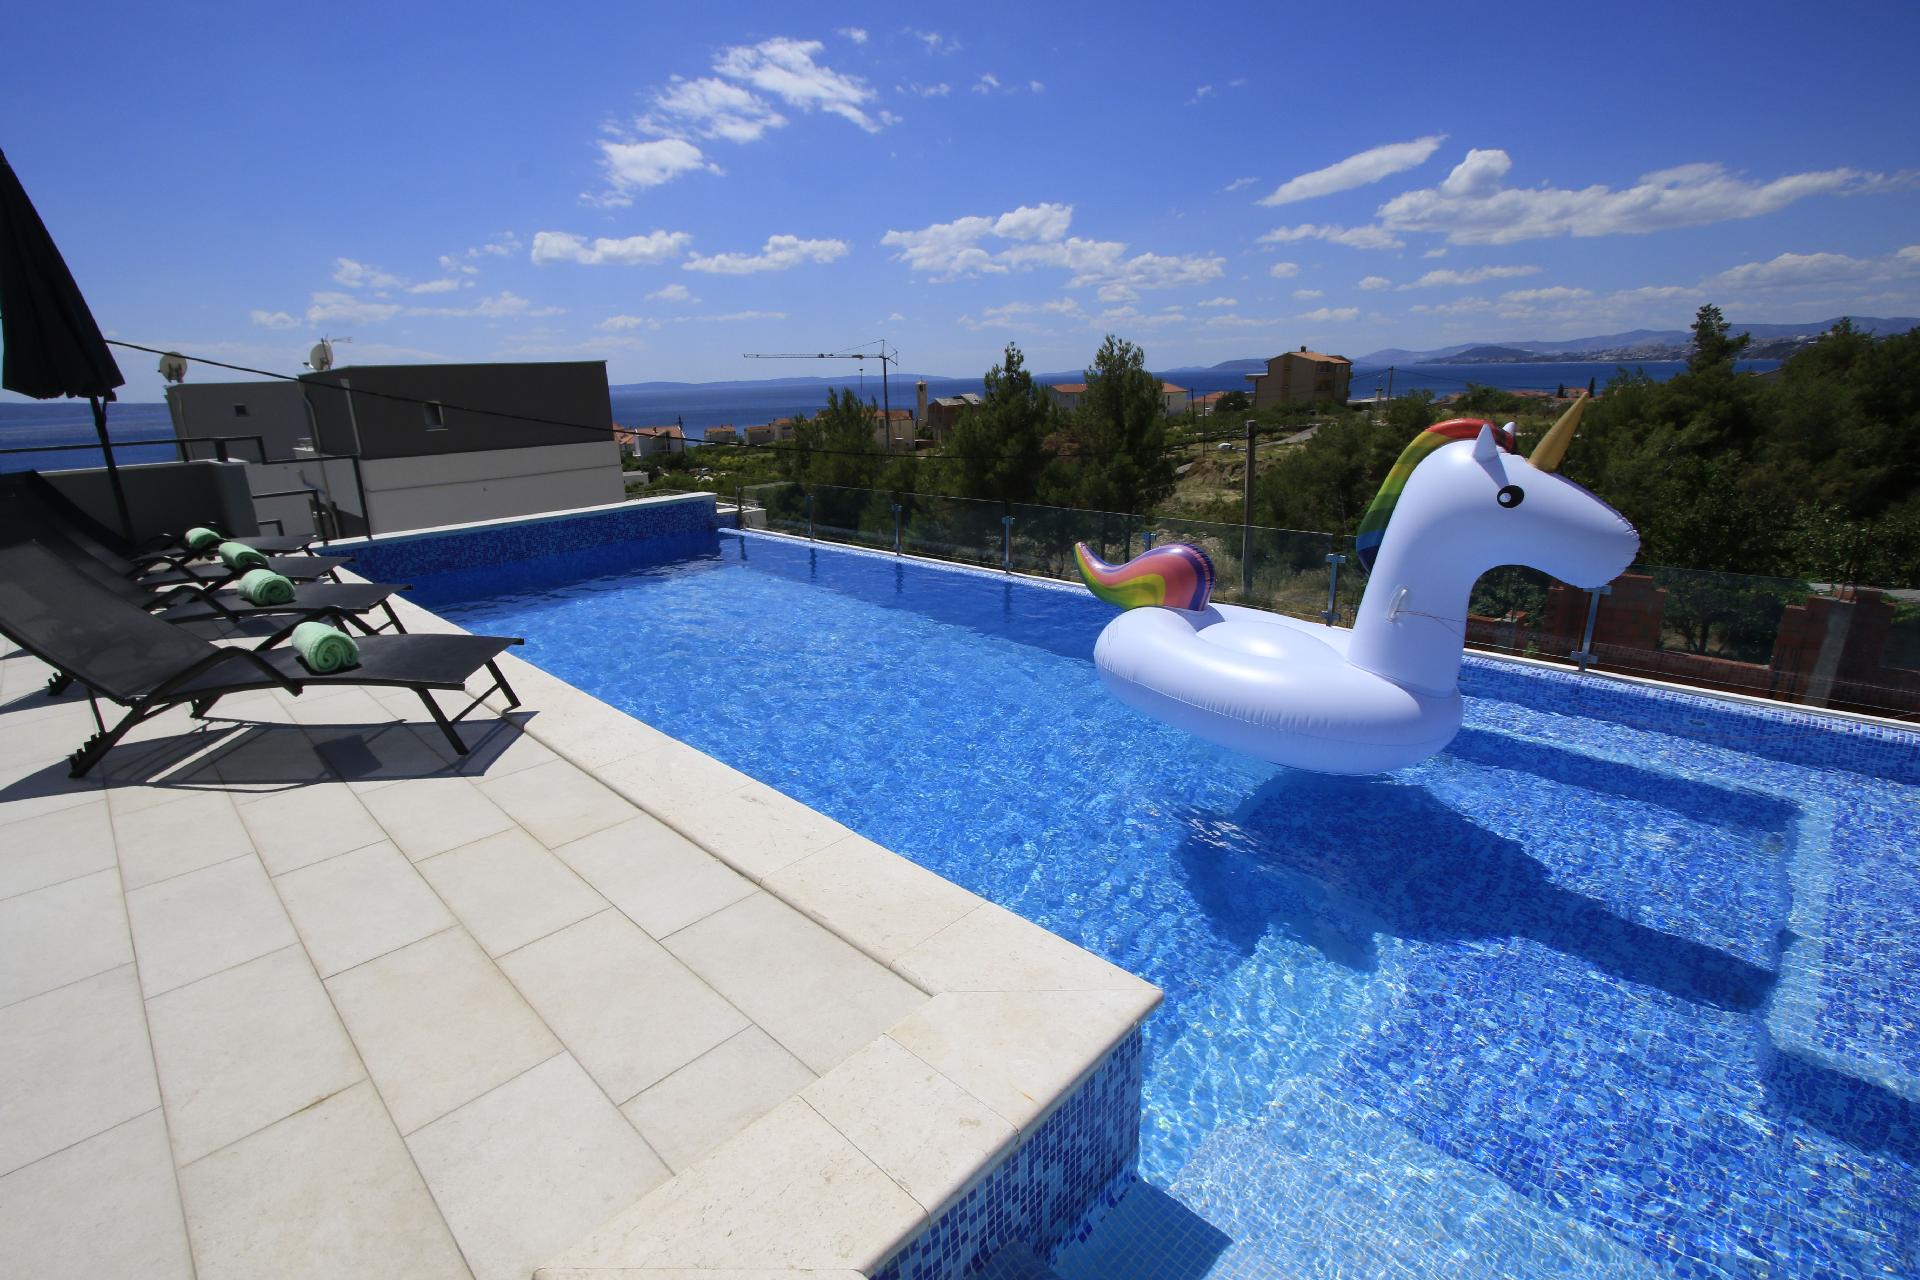 Ferienhaus mit Privatpool für 6 Personen  + 1 Ferienhaus in Dalmatien